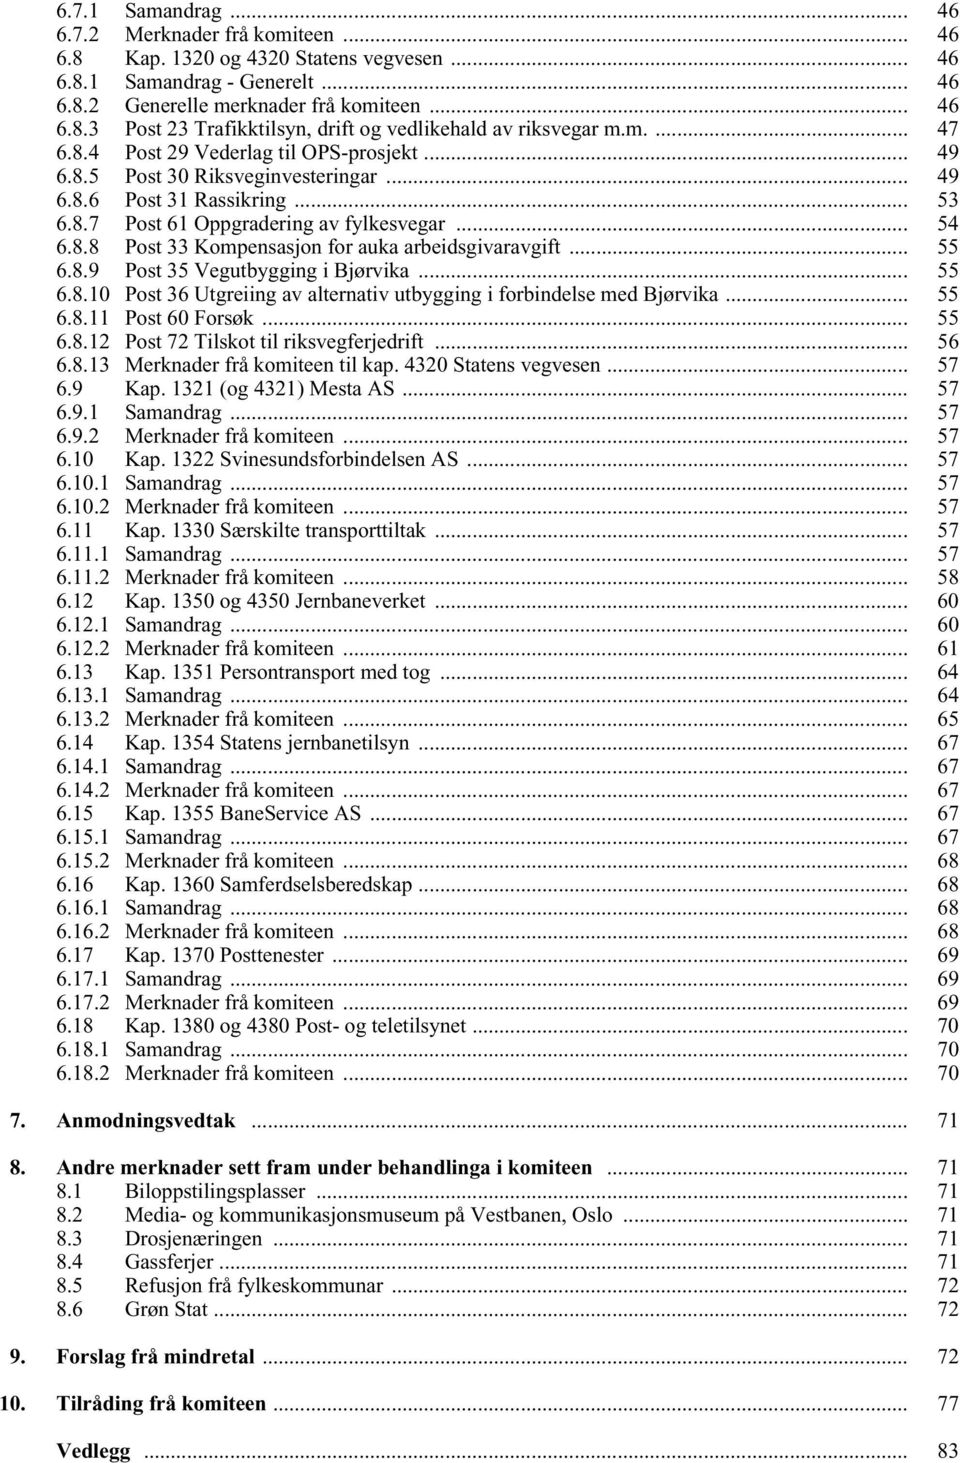 .. 55 6.8.9 Post 35 Vegutbygging i Bjørvika... 55 6.8.10 Post 36 Utgreiing av alternativ utbygging i forbindelse med Bjørvika... 55 6.8.11 Post 60 Forsøk... 55 6.8.12 Post 72 Tilskot til riksvegferjedrift.